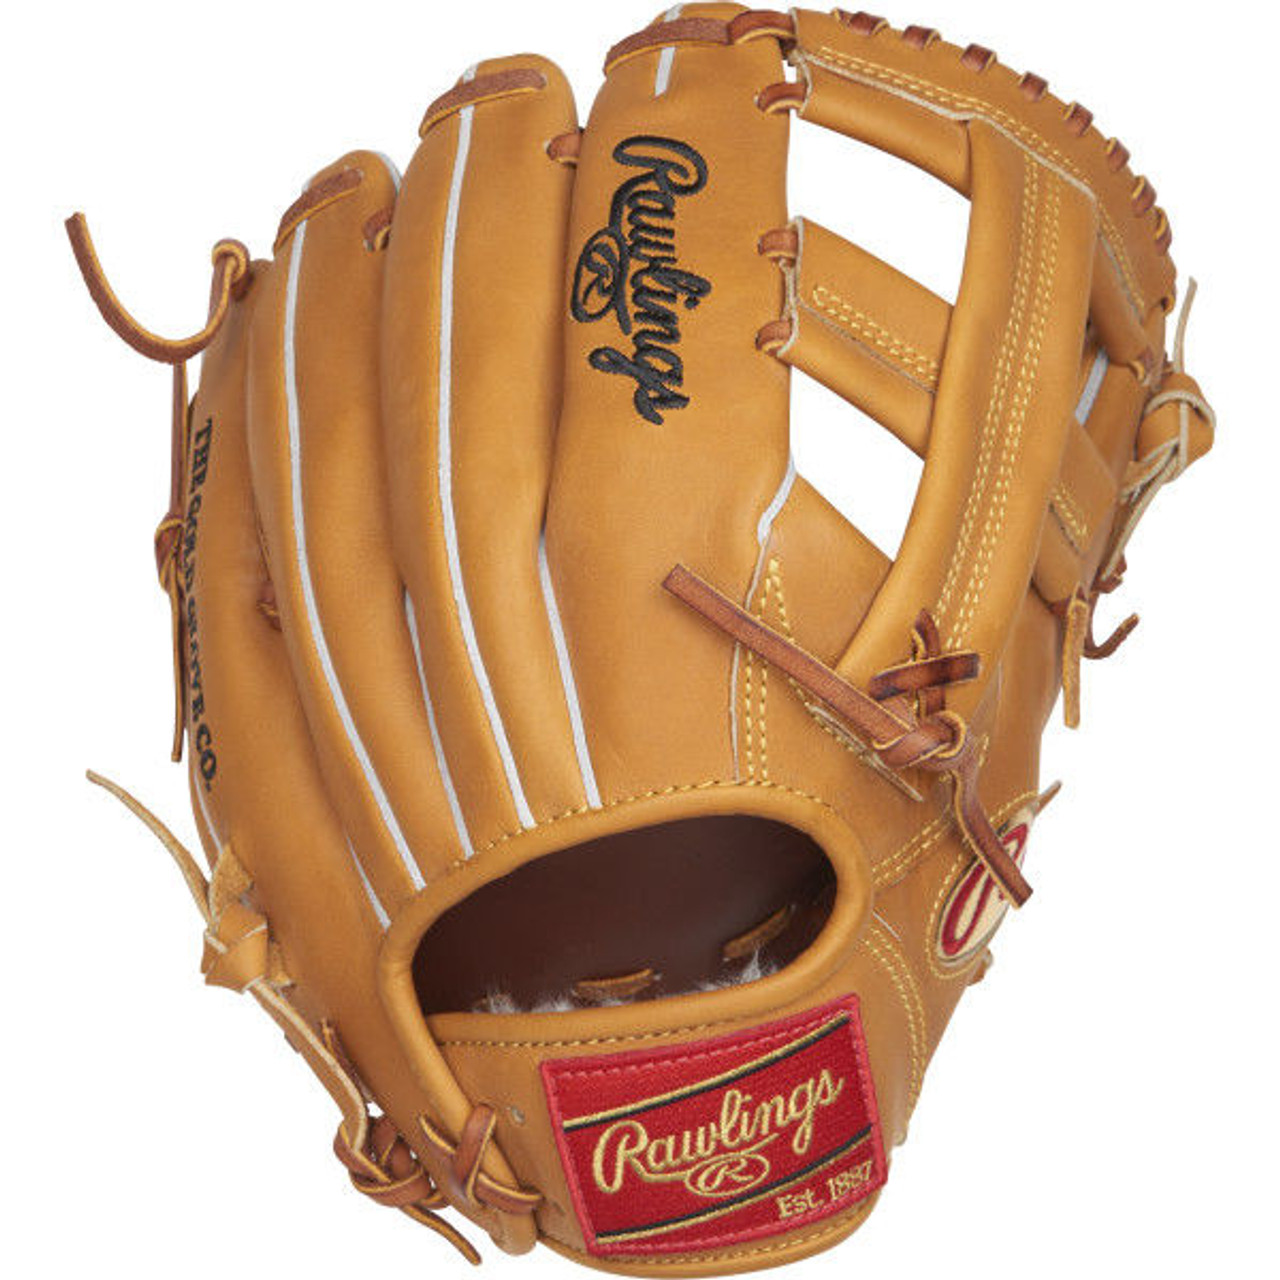 Troy Tulowitzki Custom Glove